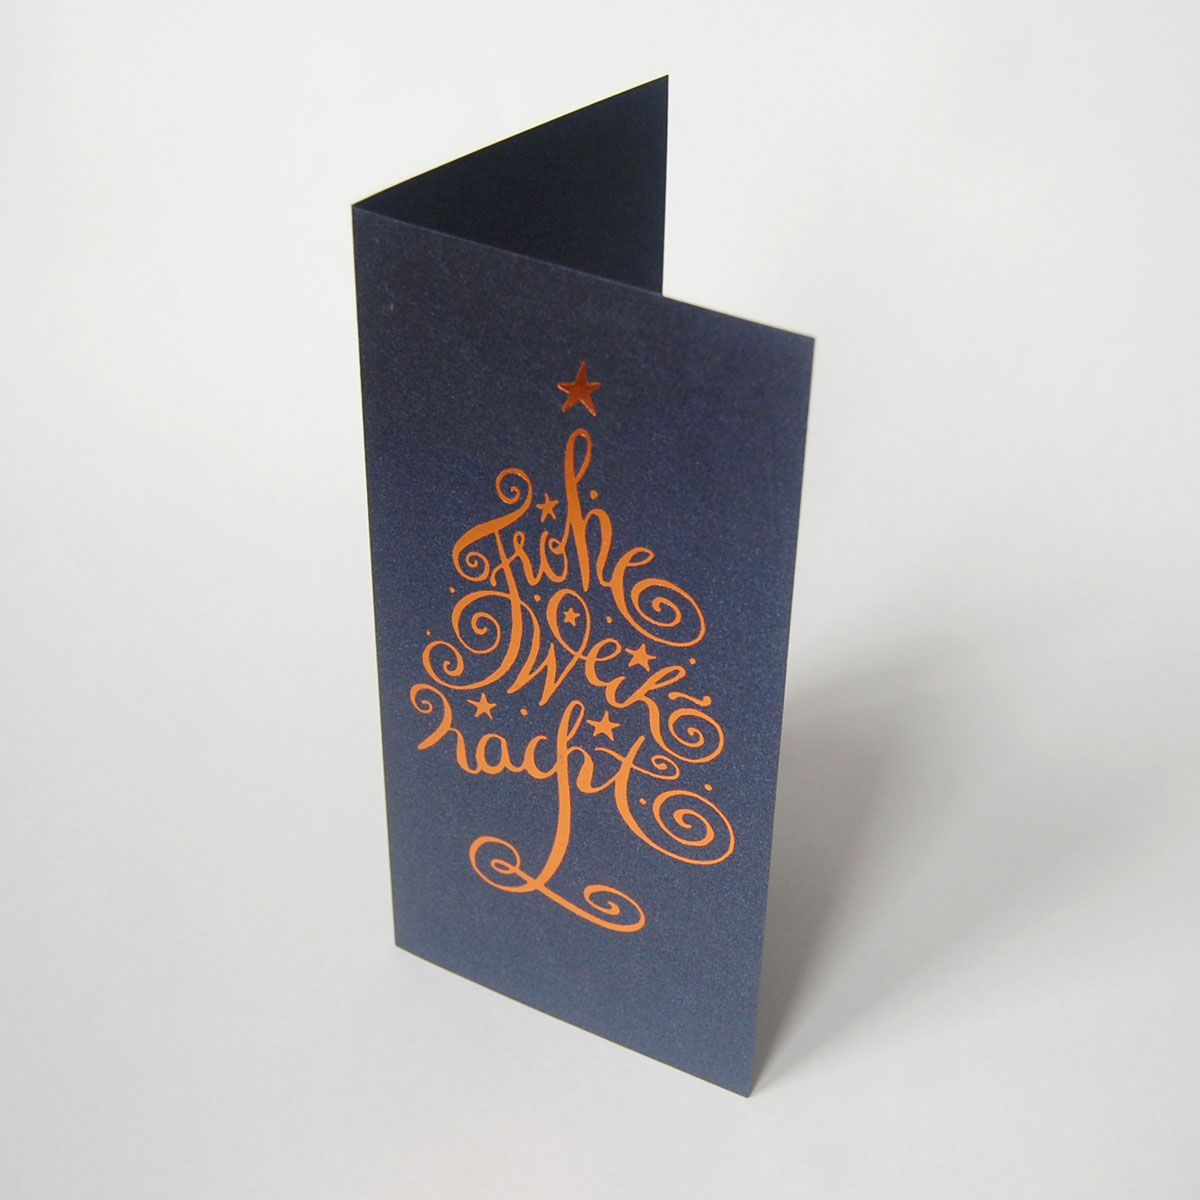 Frohe Weihnacht, edle Weihnachtskarten mit schicker Kalligrafie